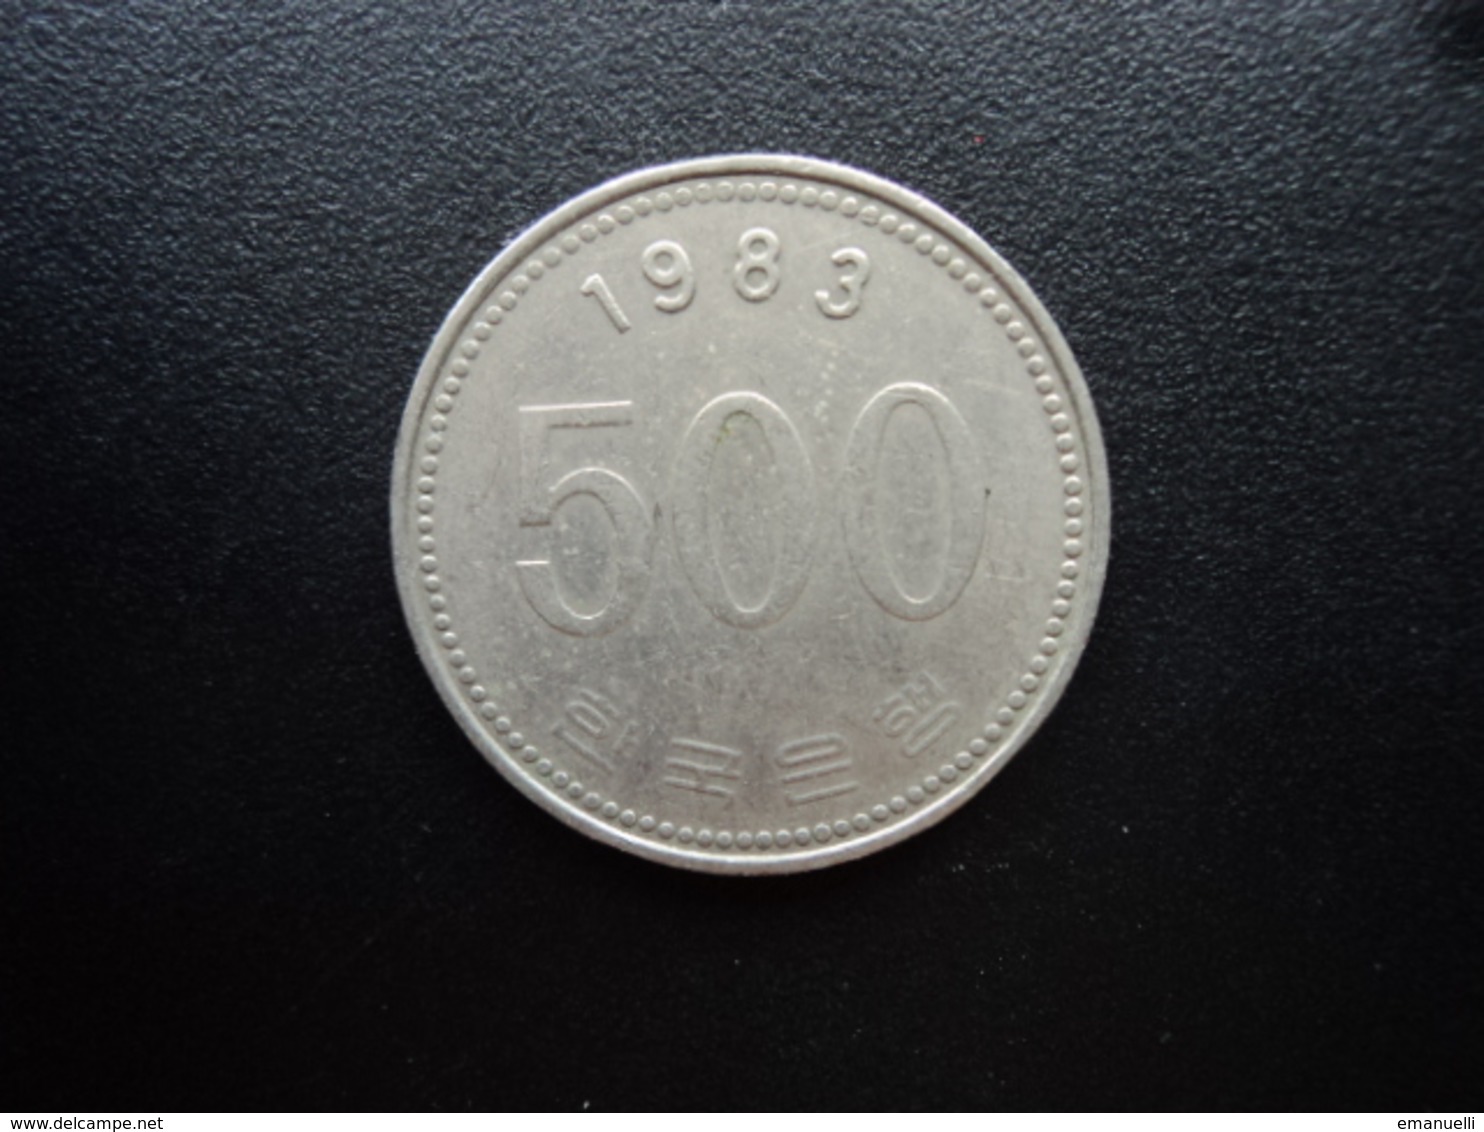 CORÉE DU SUD : 500 WON   1983   KM 27     TTB - Coreal Del Sur